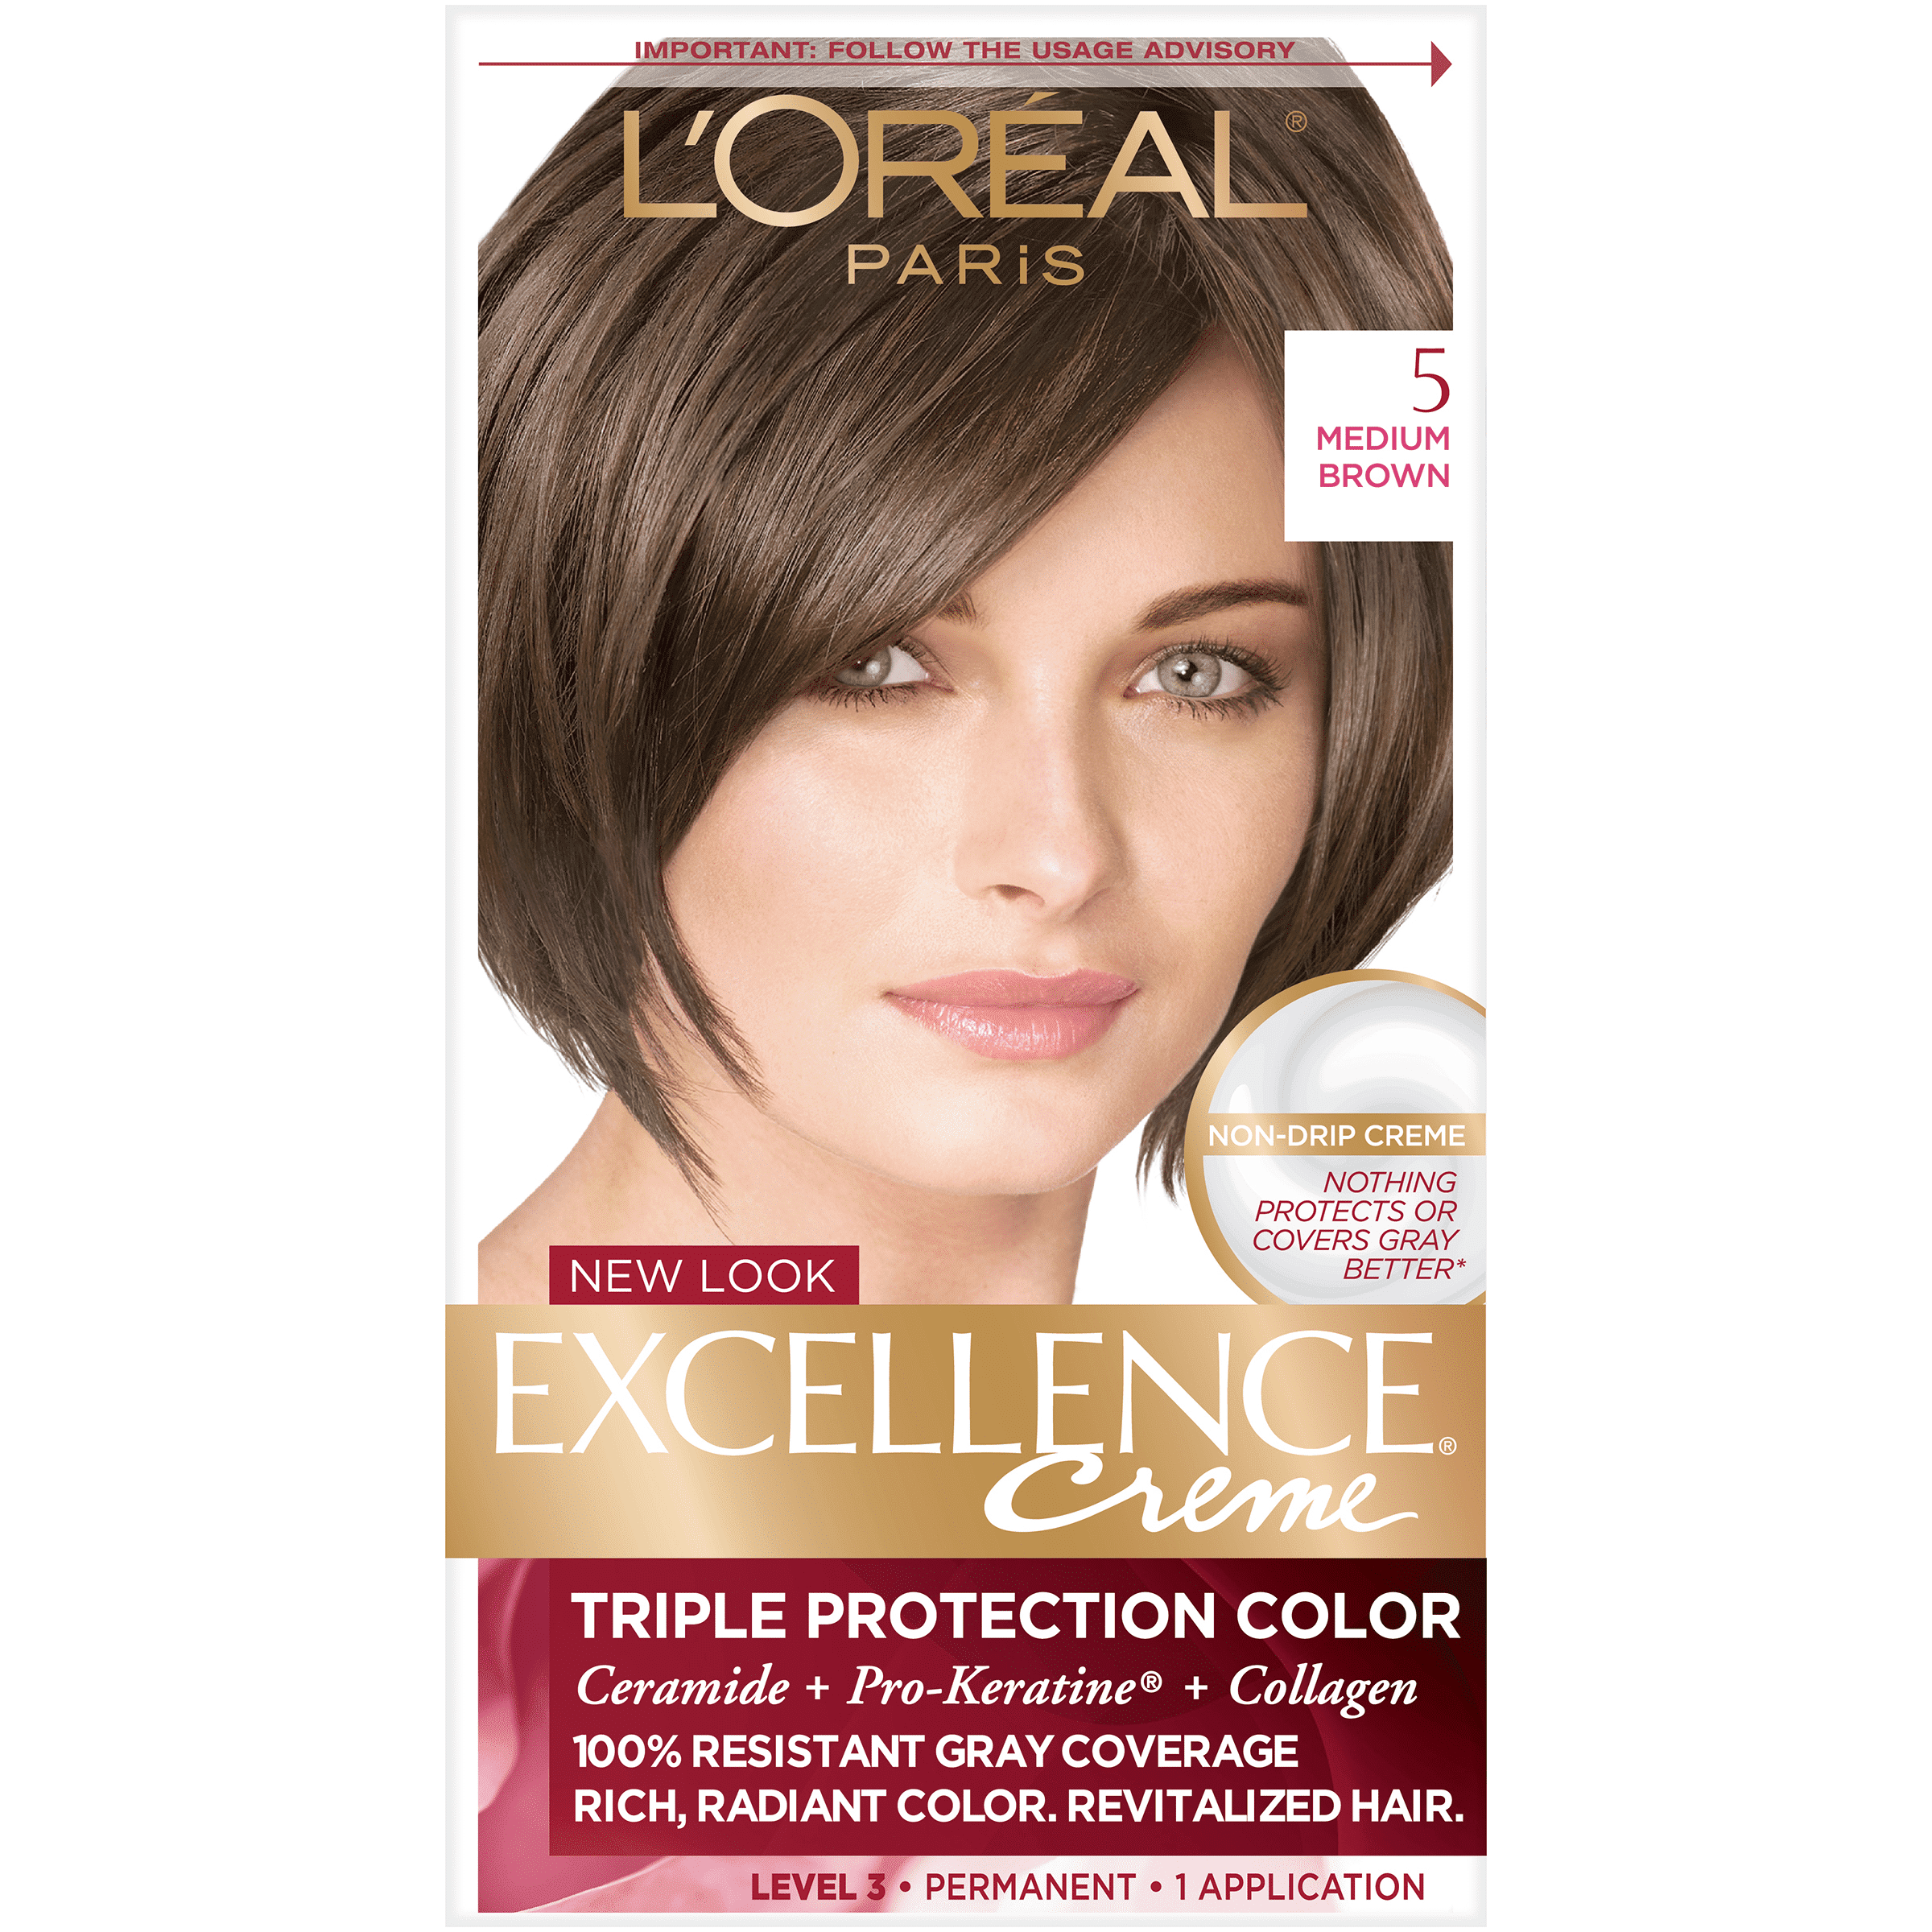 L'Oreal Paris Excellence Creme Permanent Hair Color, 5 Medium Brown -  